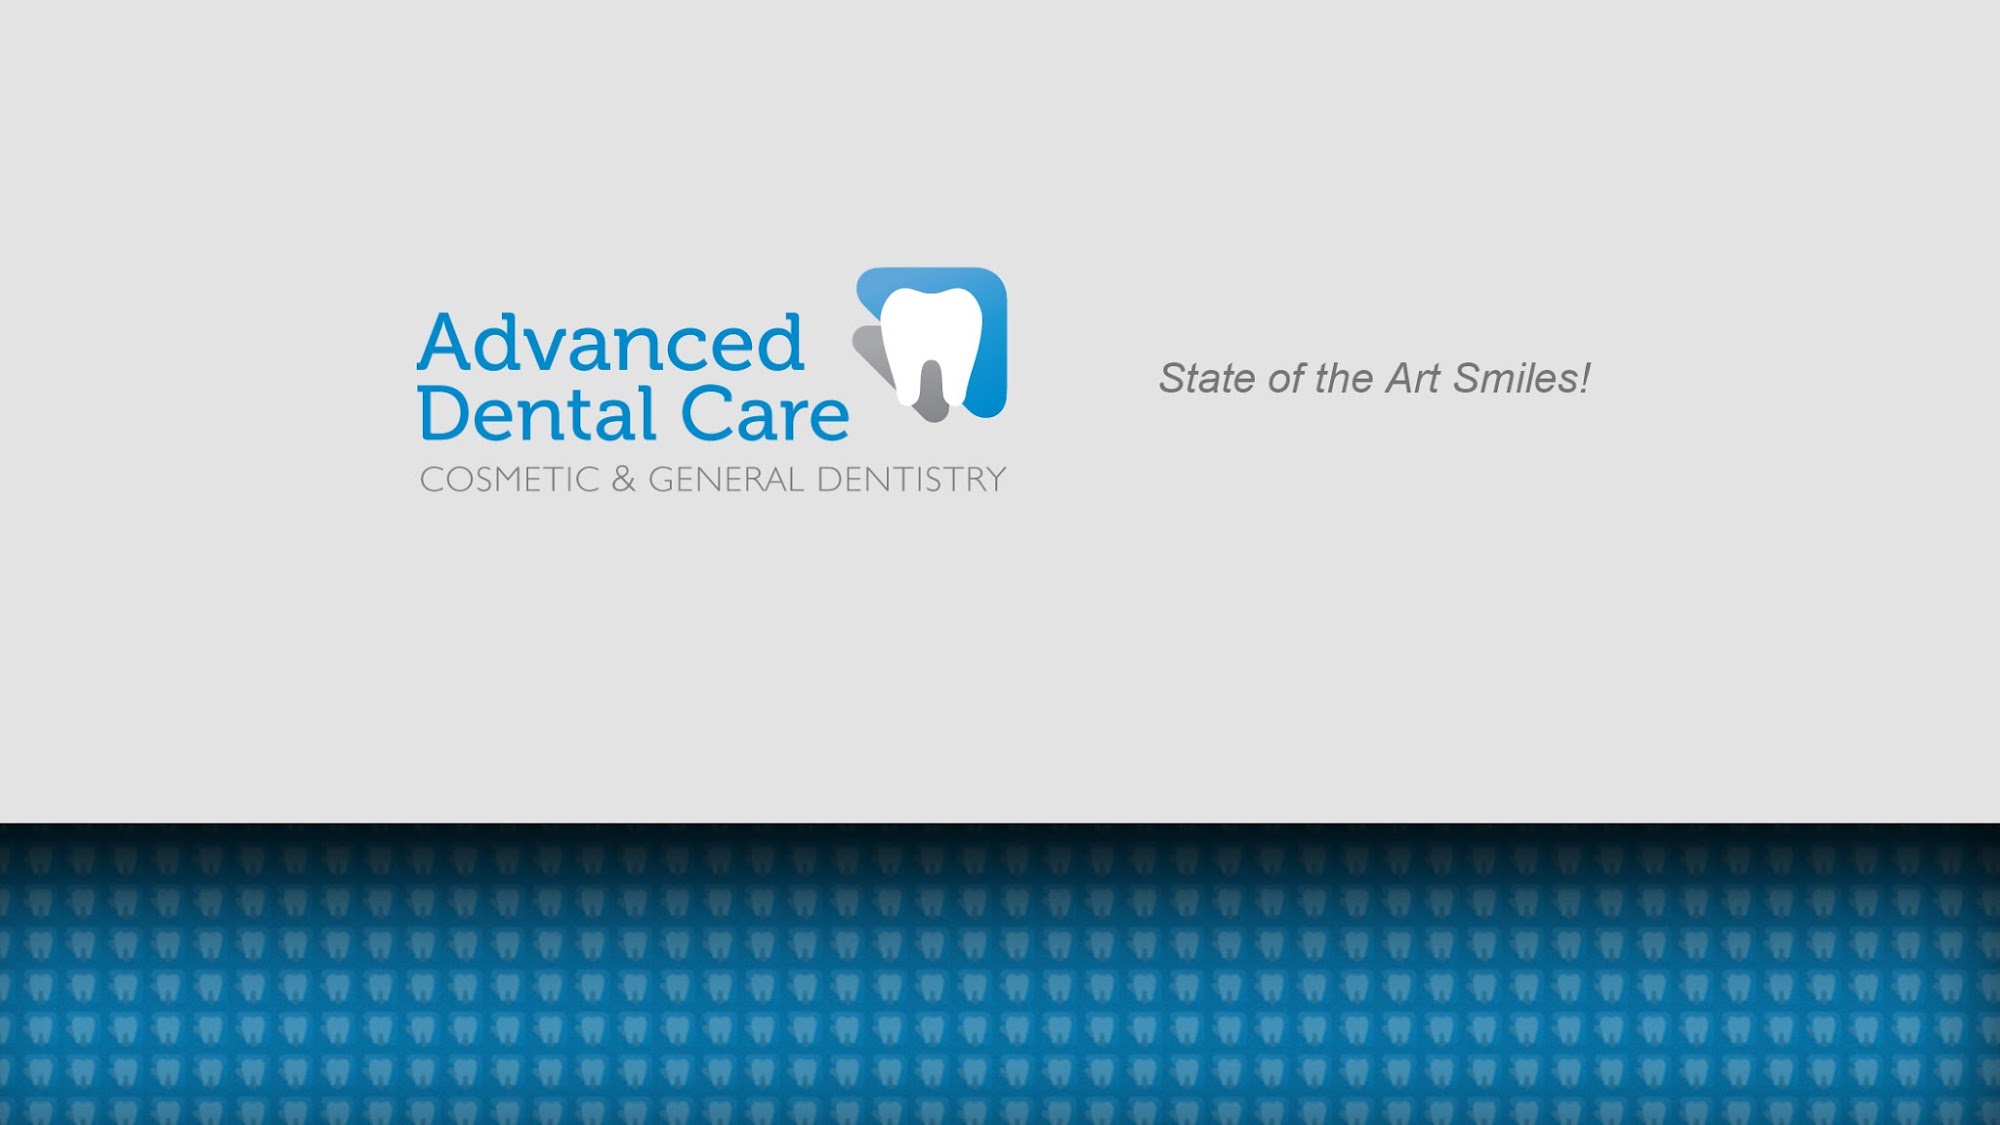 Advanced Dental Care - Dr. Dieter Burr